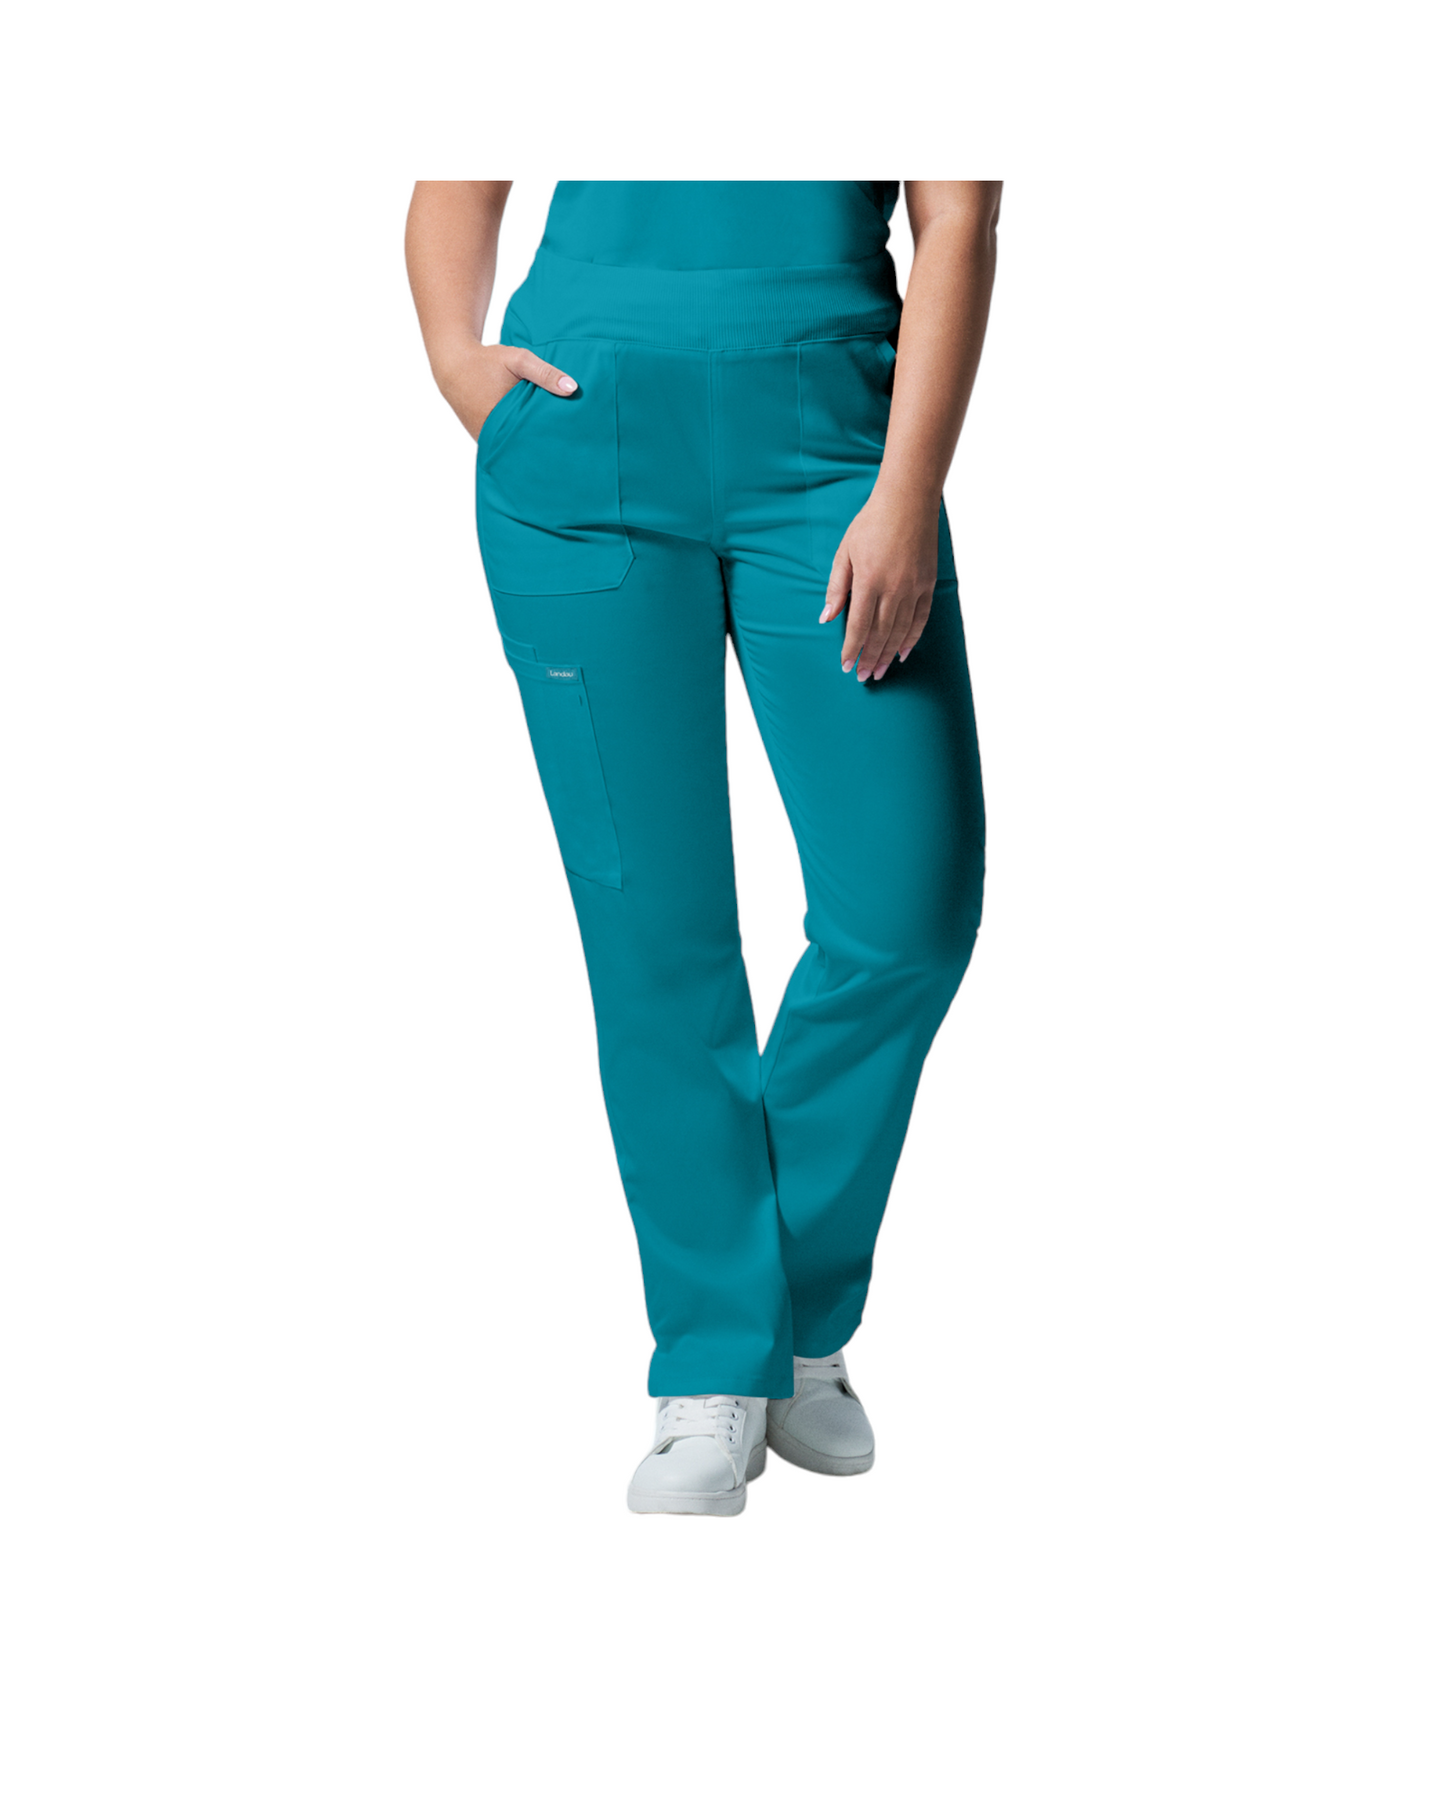 Pantalons 6 poches pour femmes Landau Proflex #LB405 OS couleur Sarcelle